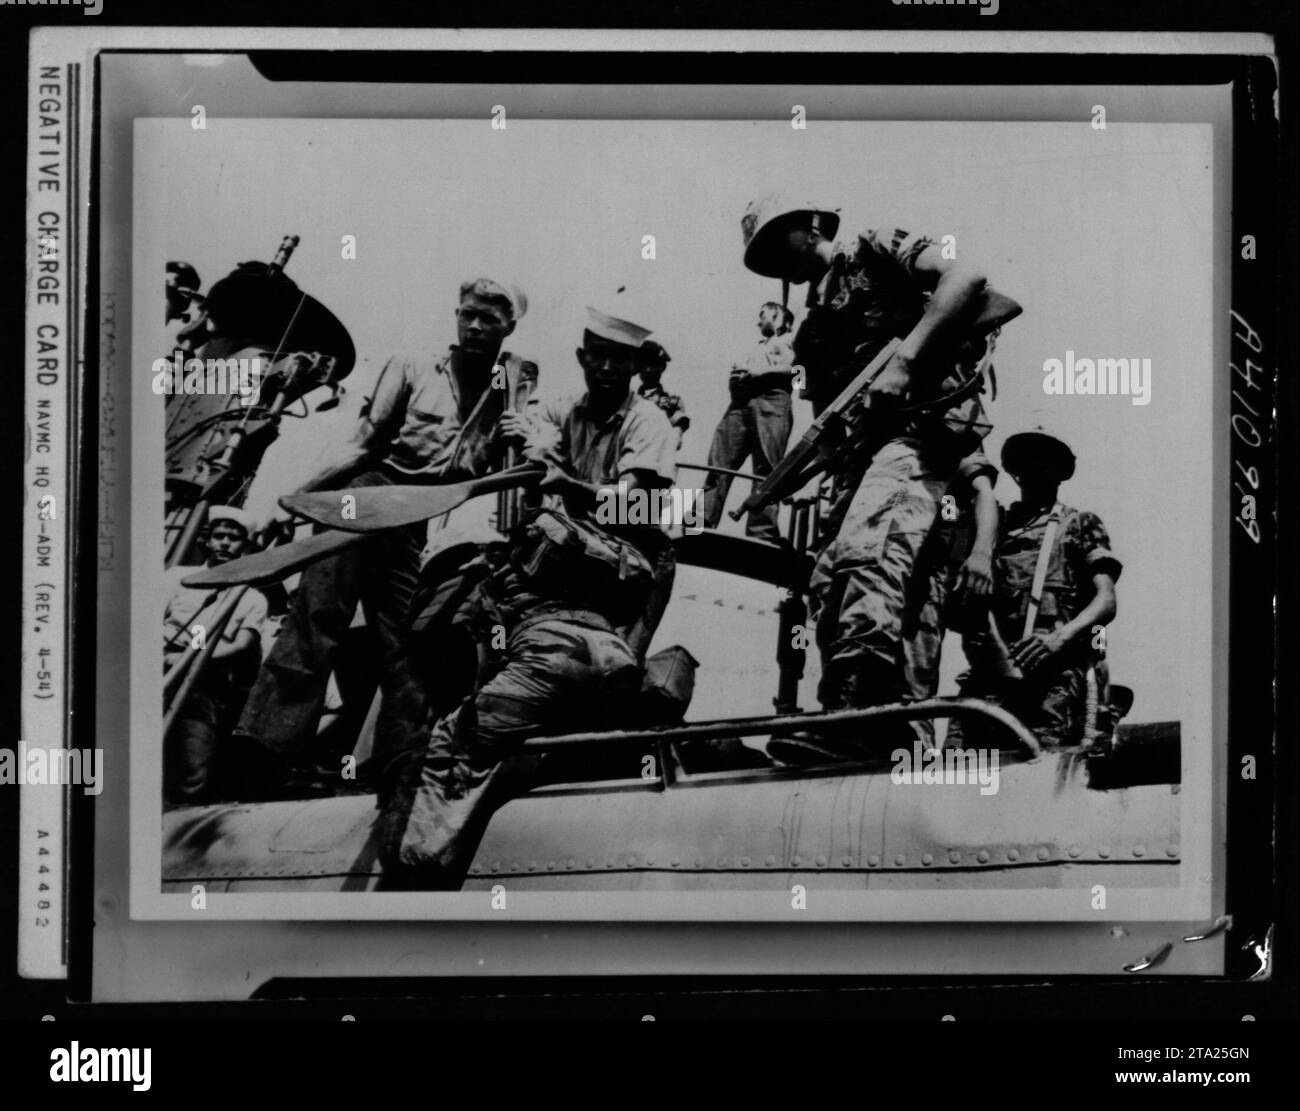 Amphibische Übung während des Vietnamkrieges, in diesem Bild werden Einzelpersonen und Gruppen gesehen, die an der Übung teilnehmen. Die Übung zielt darauf ab, die Fähigkeiten des Militärs im amphibischen Krieg zu testen. Das Bild spiegelt die amerikanischen Militäraktivitäten in dieser turbulenten Zeit wider. Stockfoto